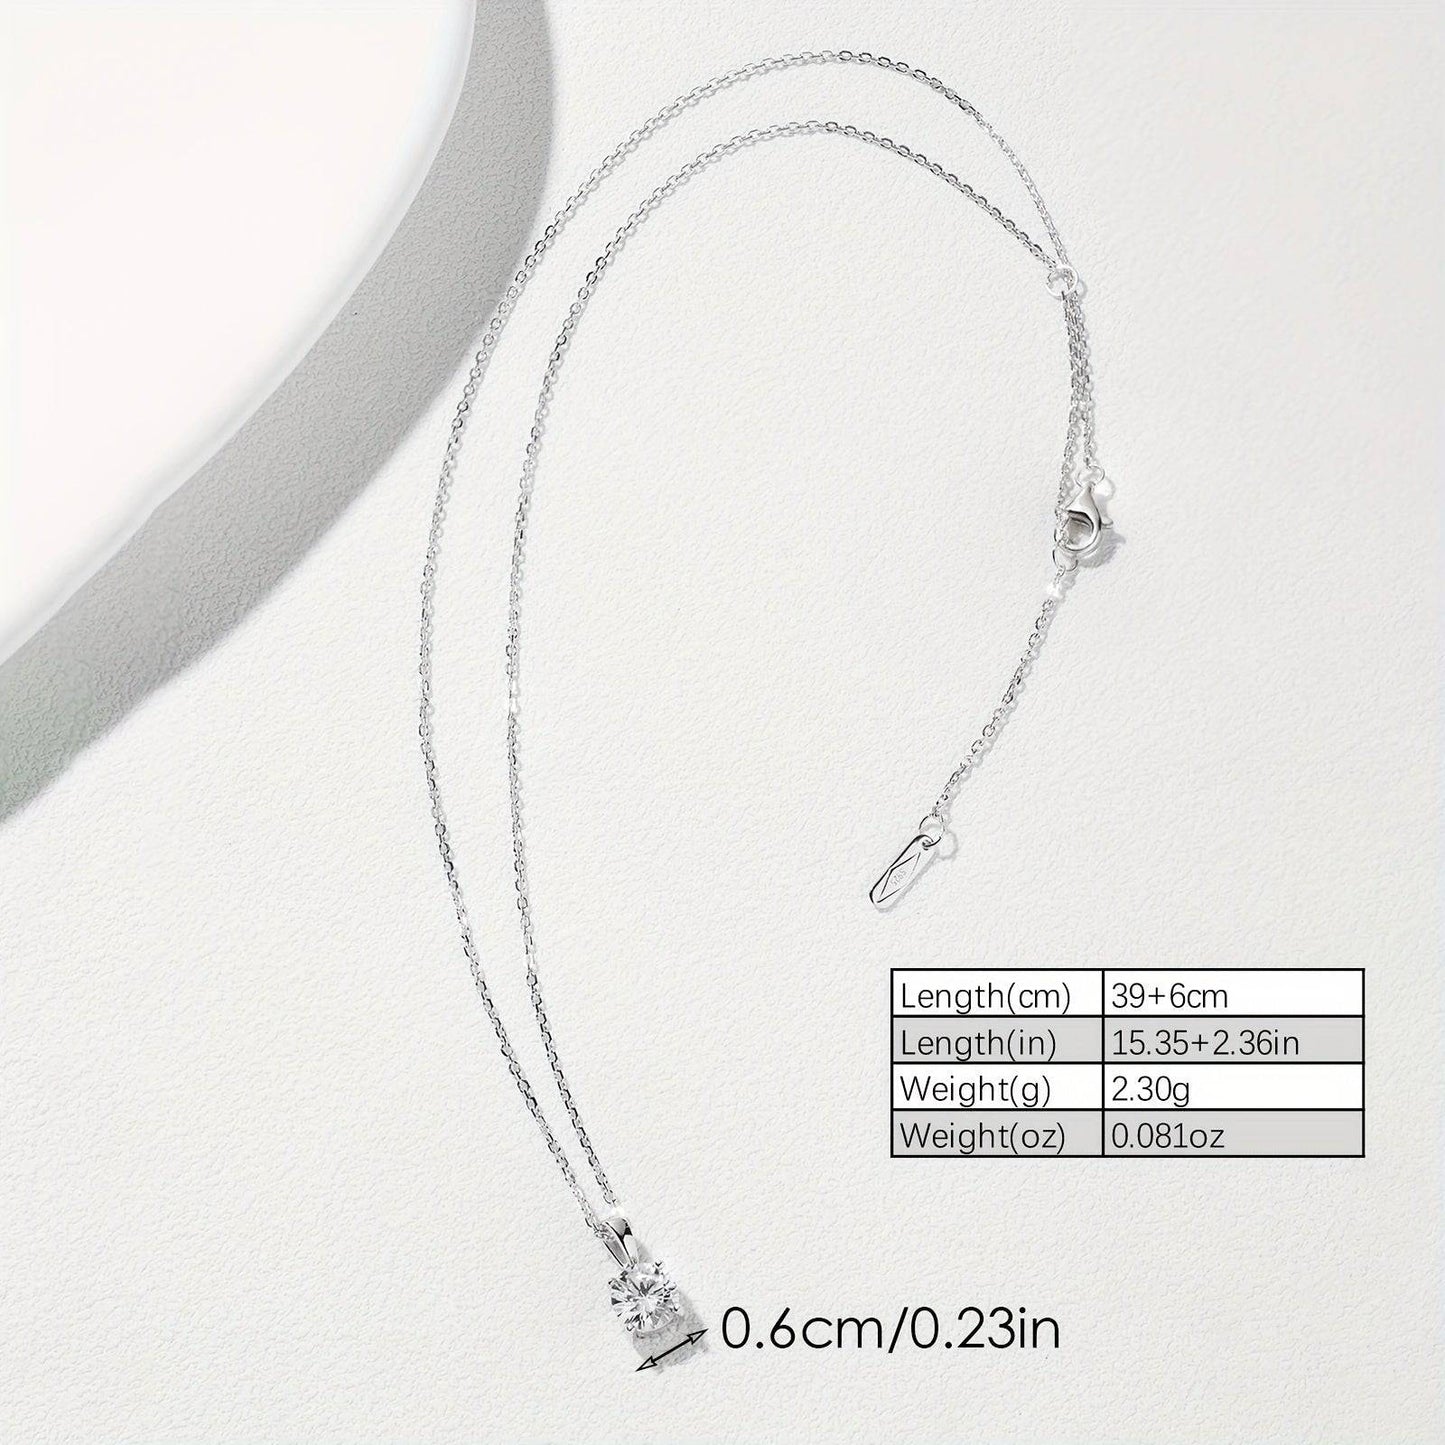 925er-Sterlingsilber Halskette mit glänzendem Zirkon-Anhänger - Perfekt für den täglichen Gebrauch.